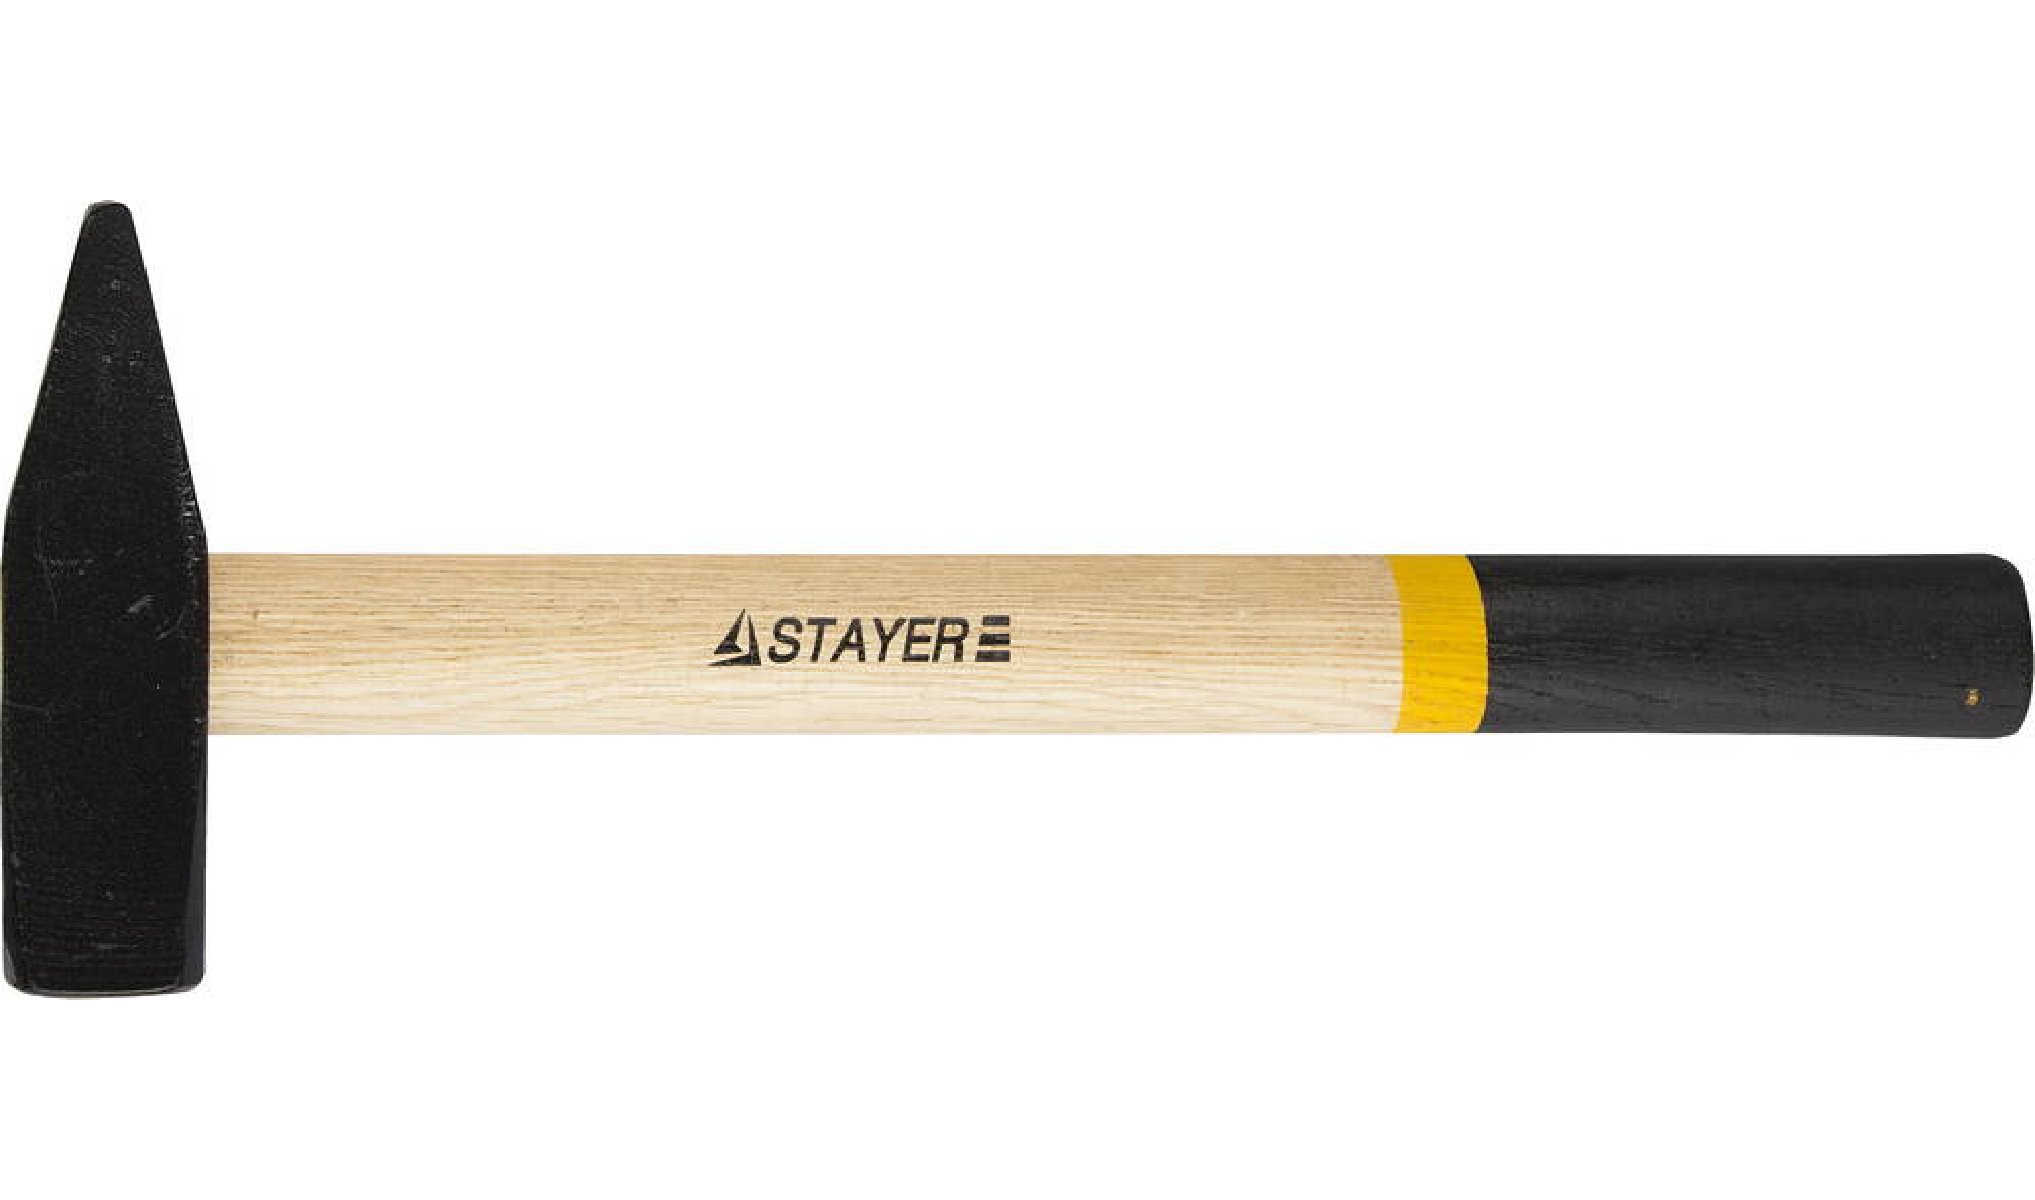   STAYER 800  (2002-08)